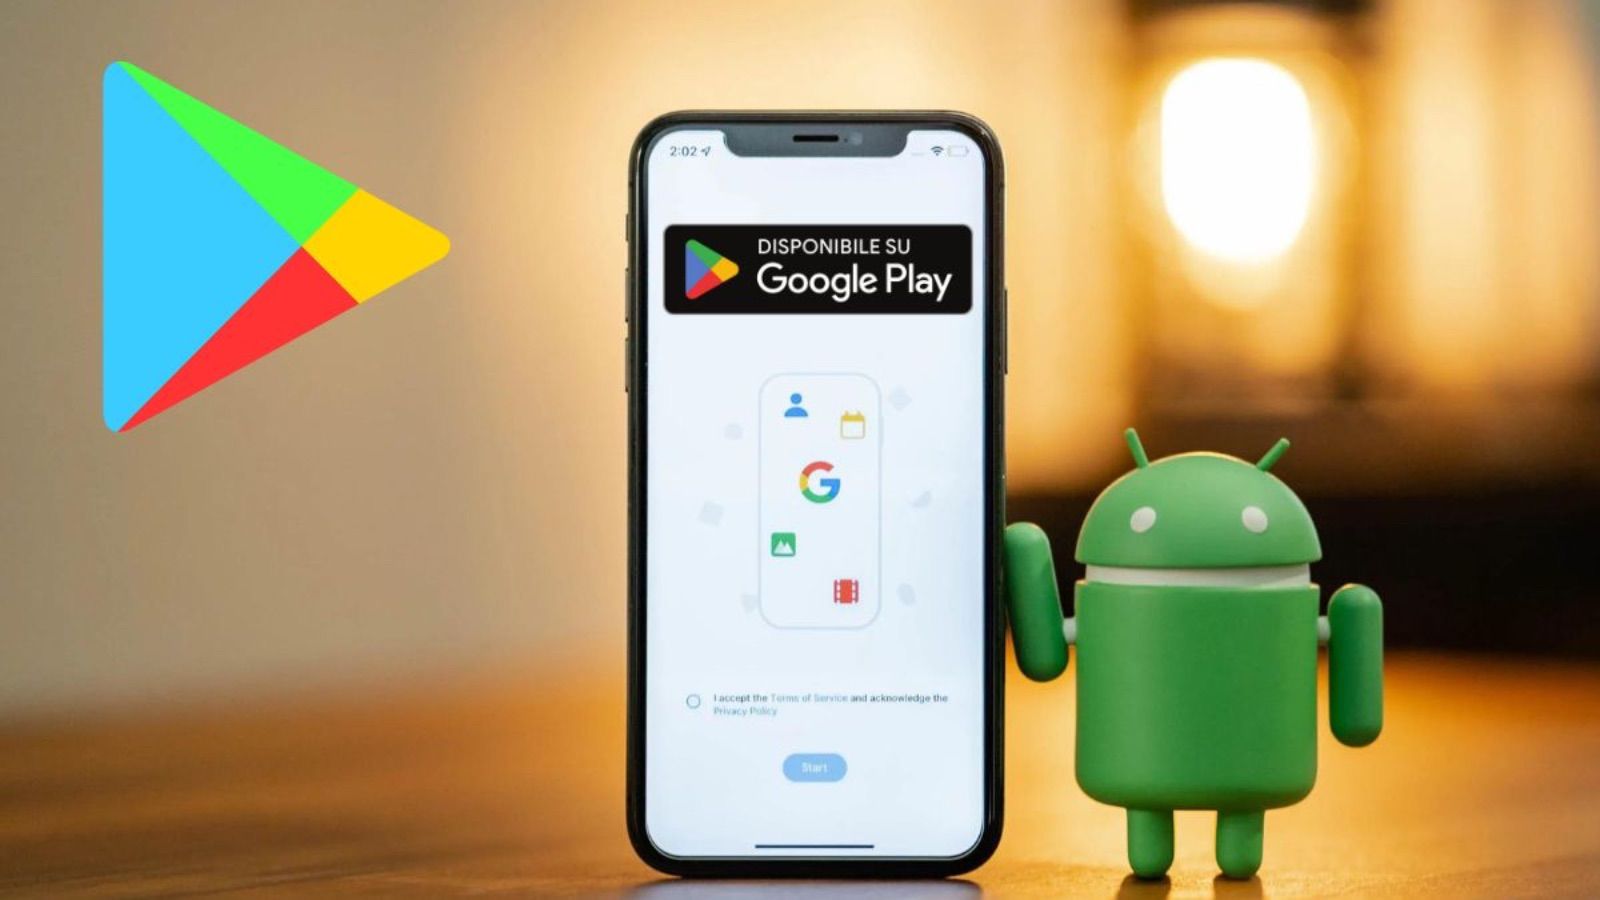 Android offre finalmente gratis app e giochi a pagamento sul Play Store